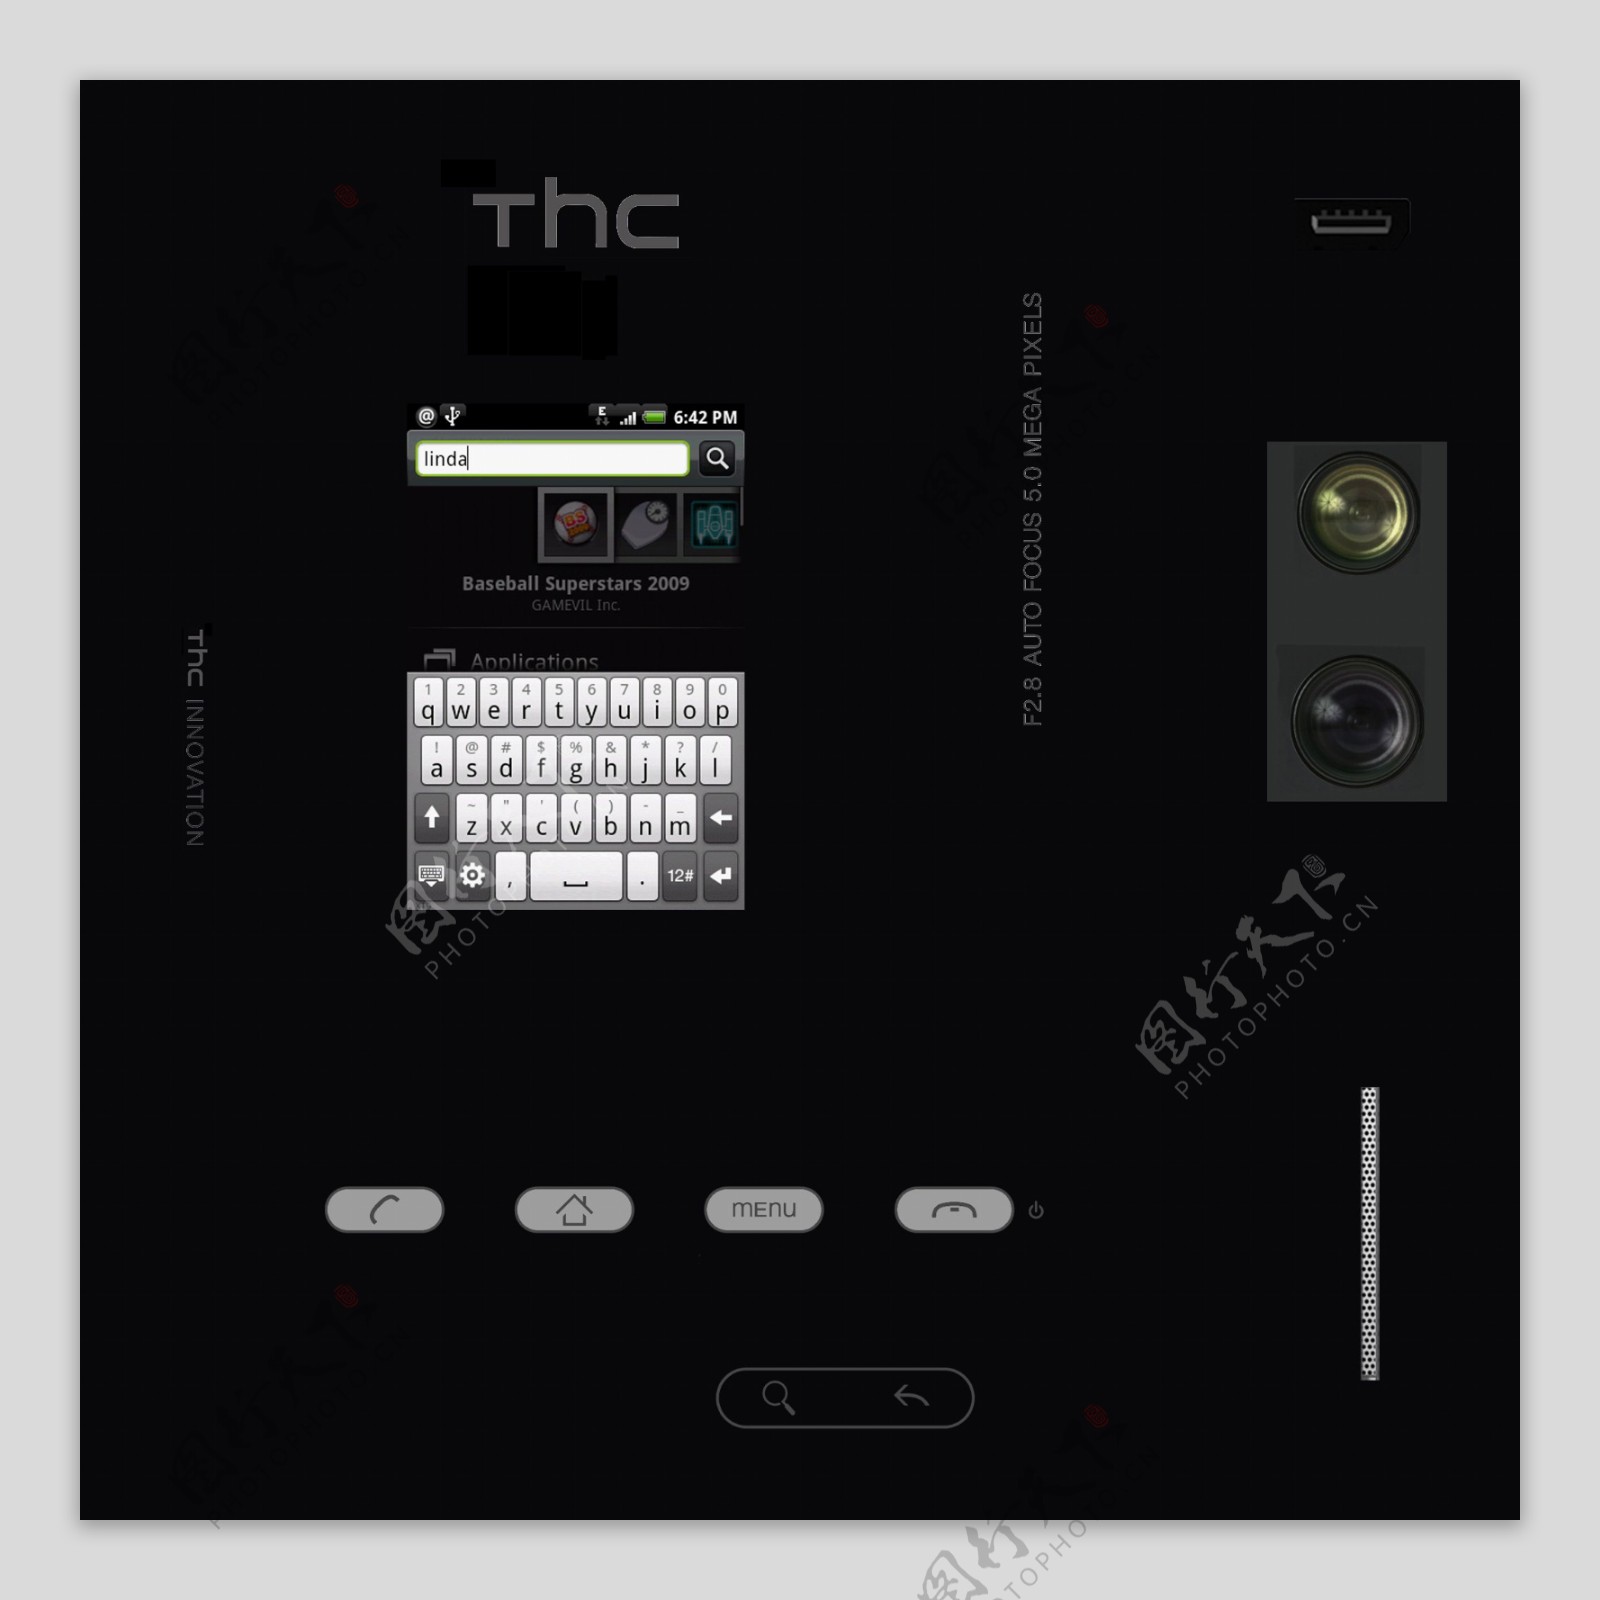 HTCG3智能手机